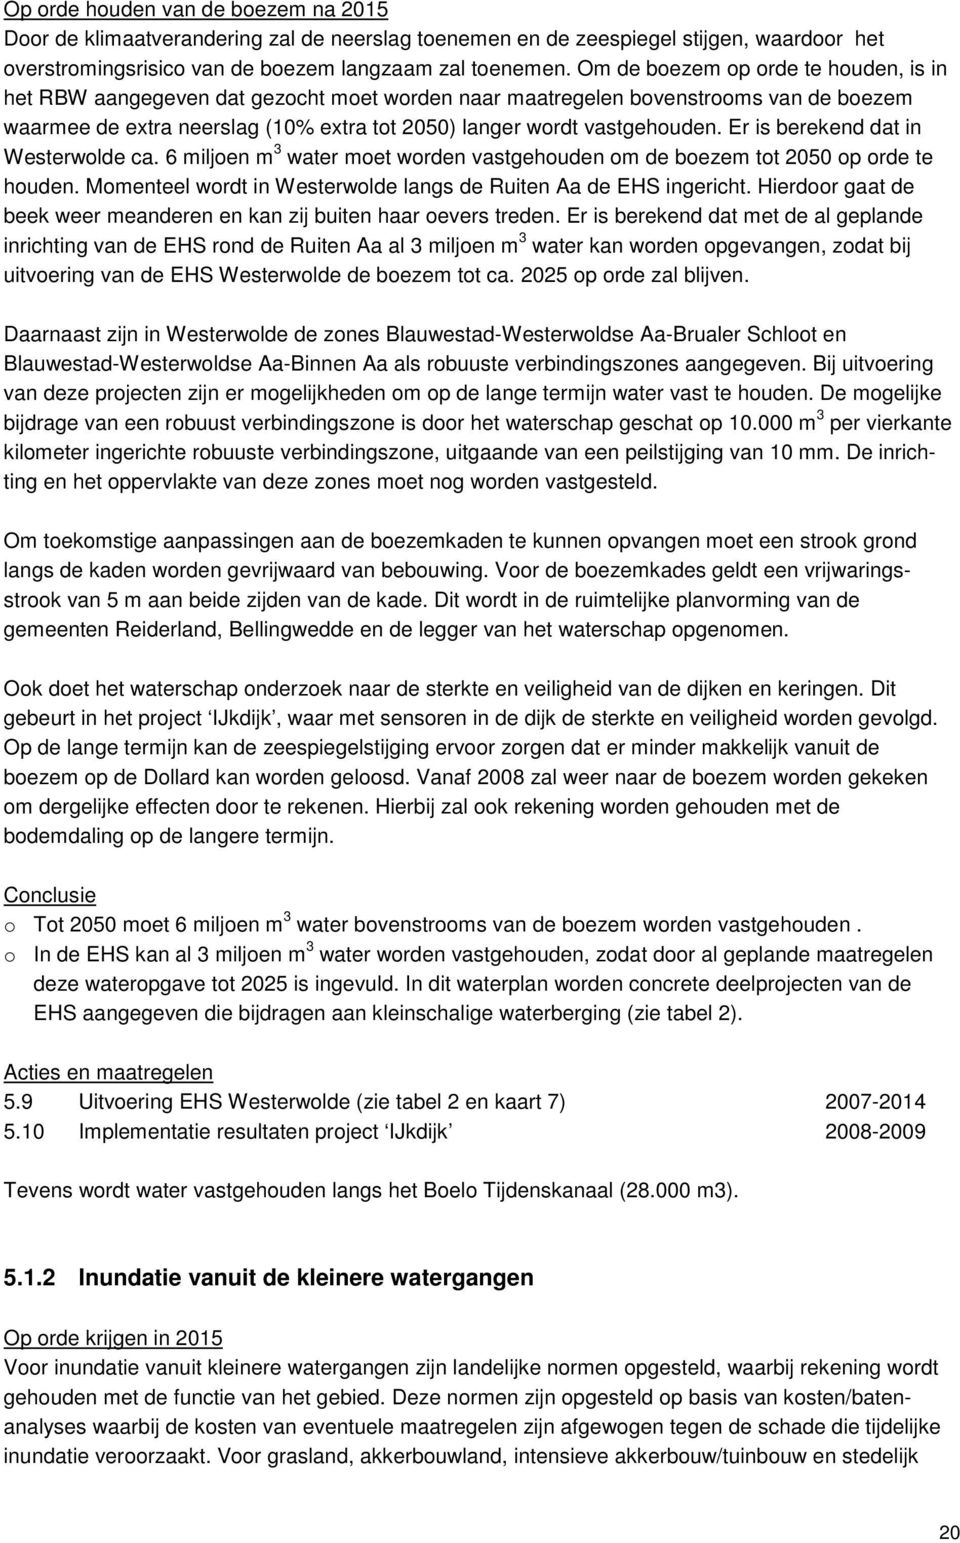 Er is berekend dat in Westerwolde ca. 6 miljoen m 3 water moet worden vastgehouden om de boezem tot 2050 op orde te houden. Momenteel wordt in Westerwolde langs de Ruiten Aa de EHS ingericht.